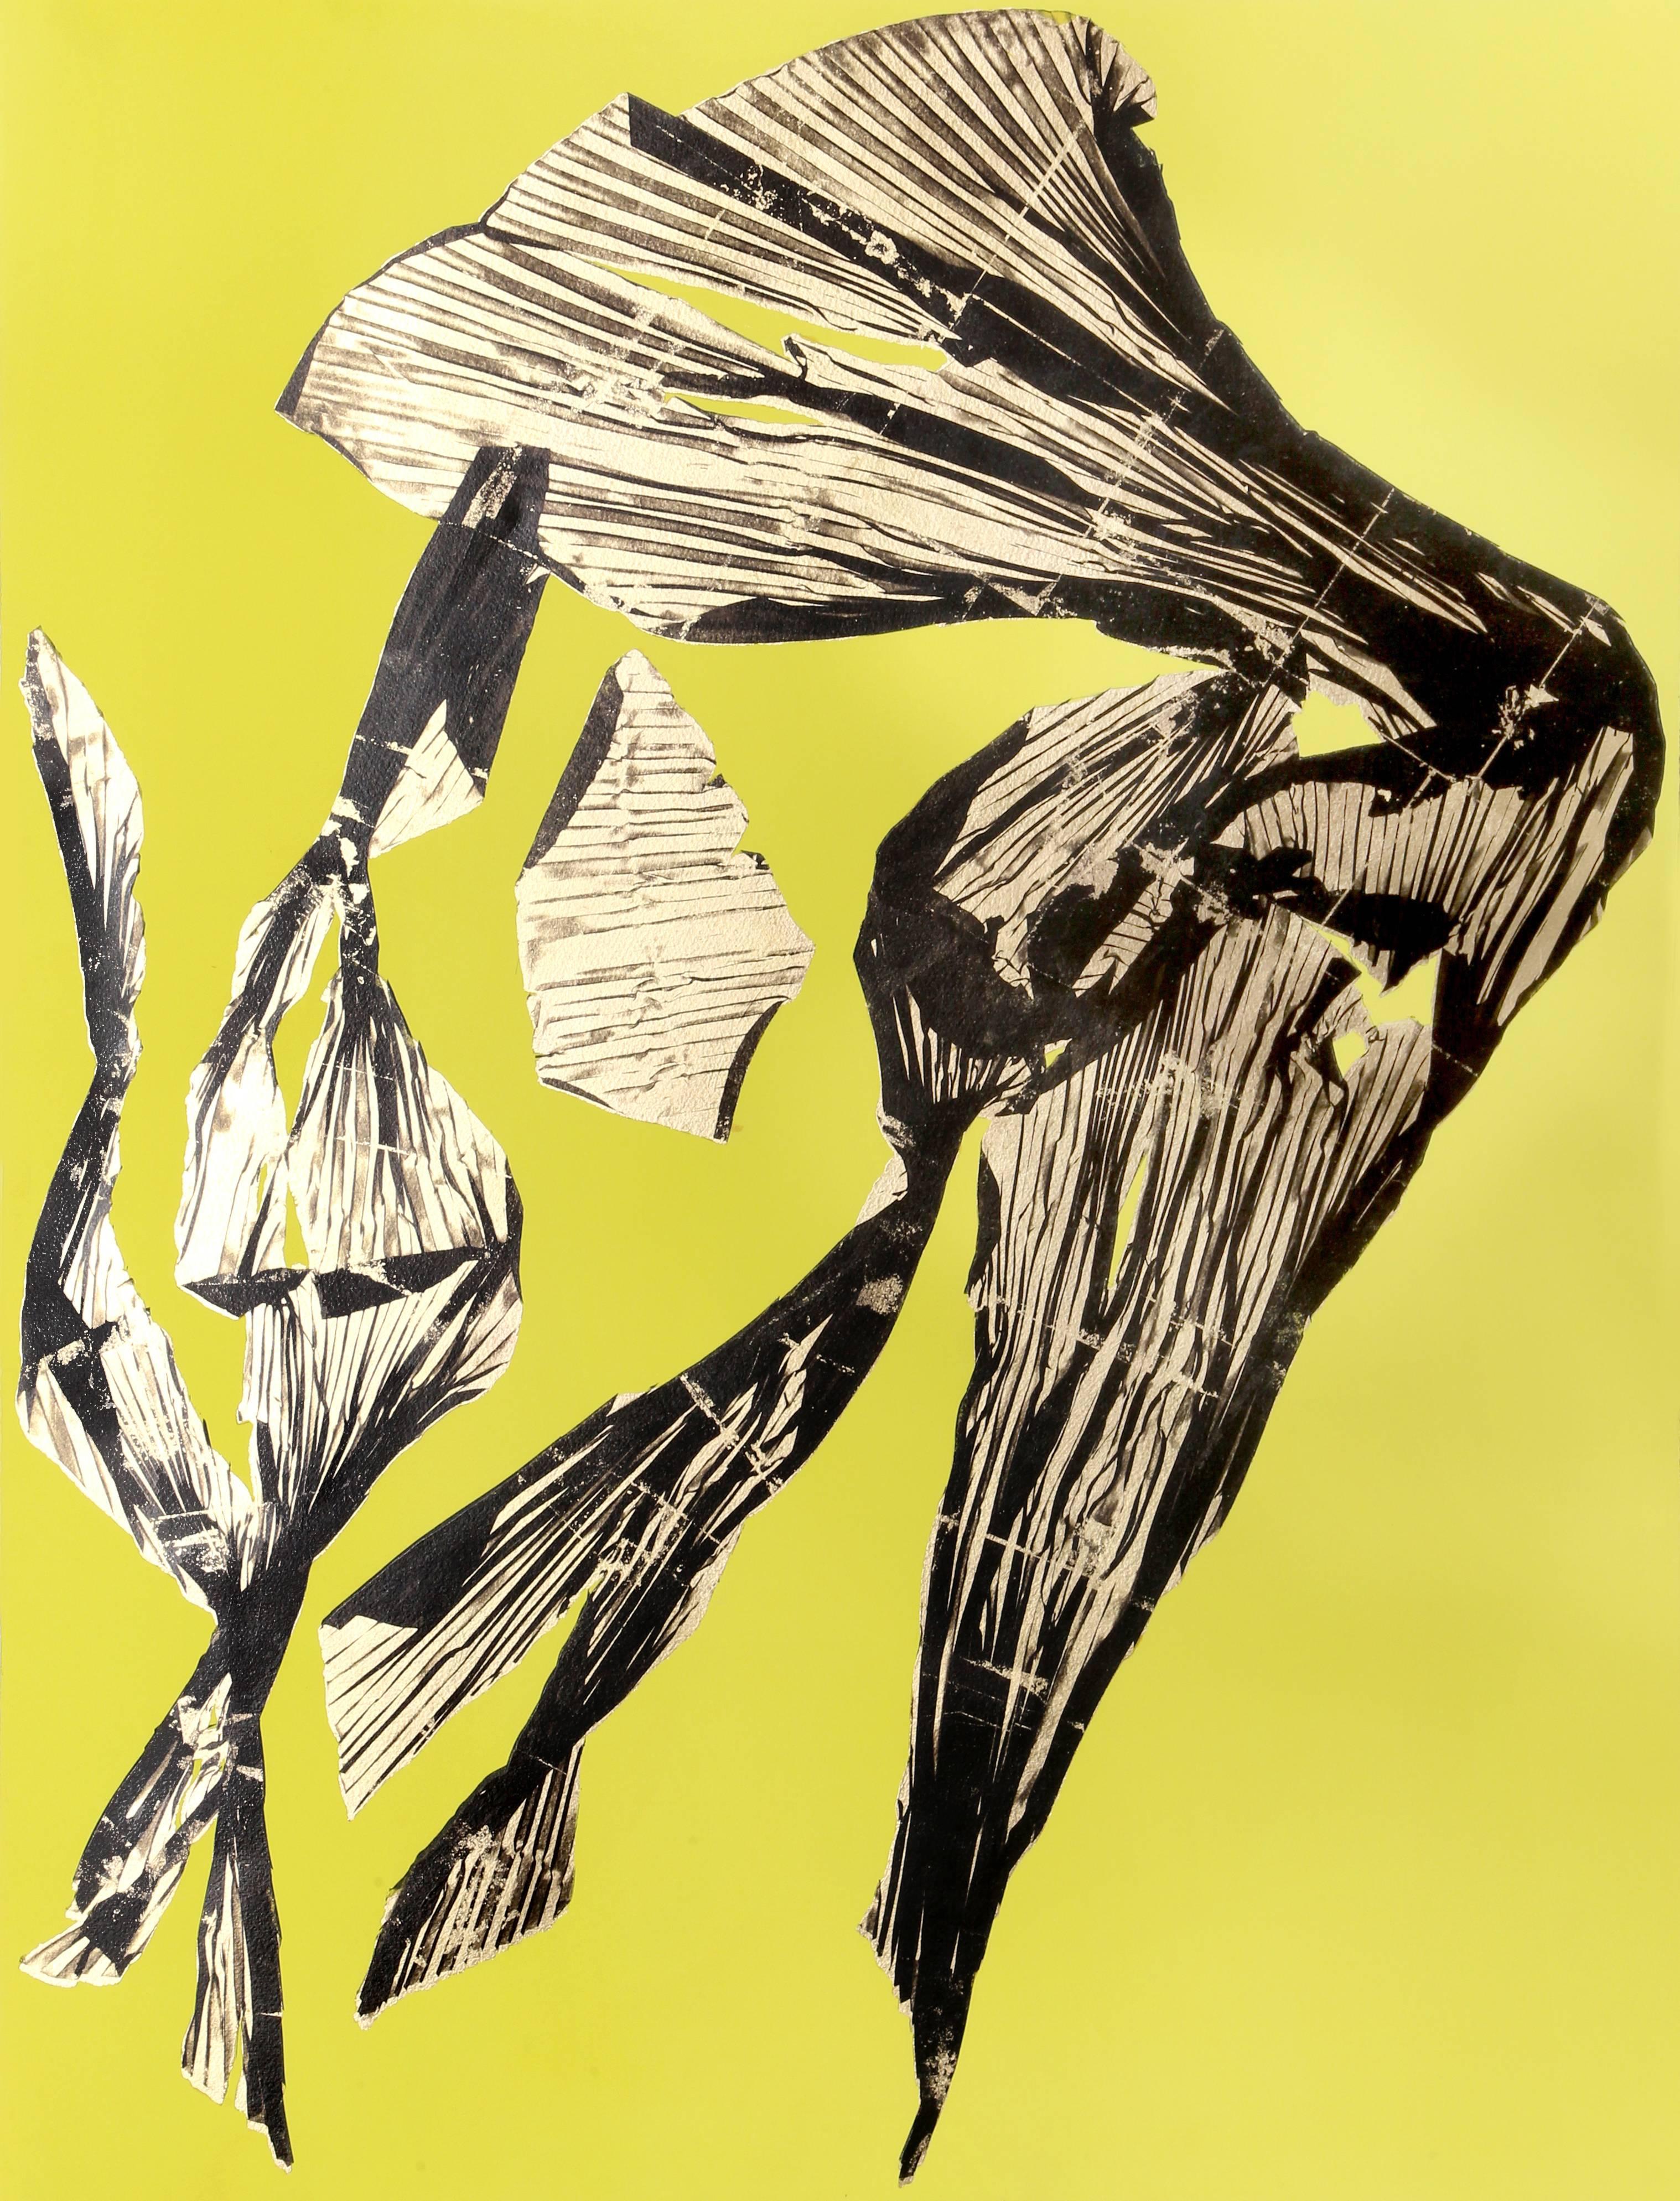 Künstlerin: Lynda Benglis, Amerikanerin (1941 - )
Titel: IV - Gelb von Dual Nature (Quad)
Jahr: 1991
Medium: Lithographie mit Blattgold auf handkoloriertem Papier, verso signiert und nummeriert
Auflage: 25
Bildgröße: 31 x 24 Zoll 